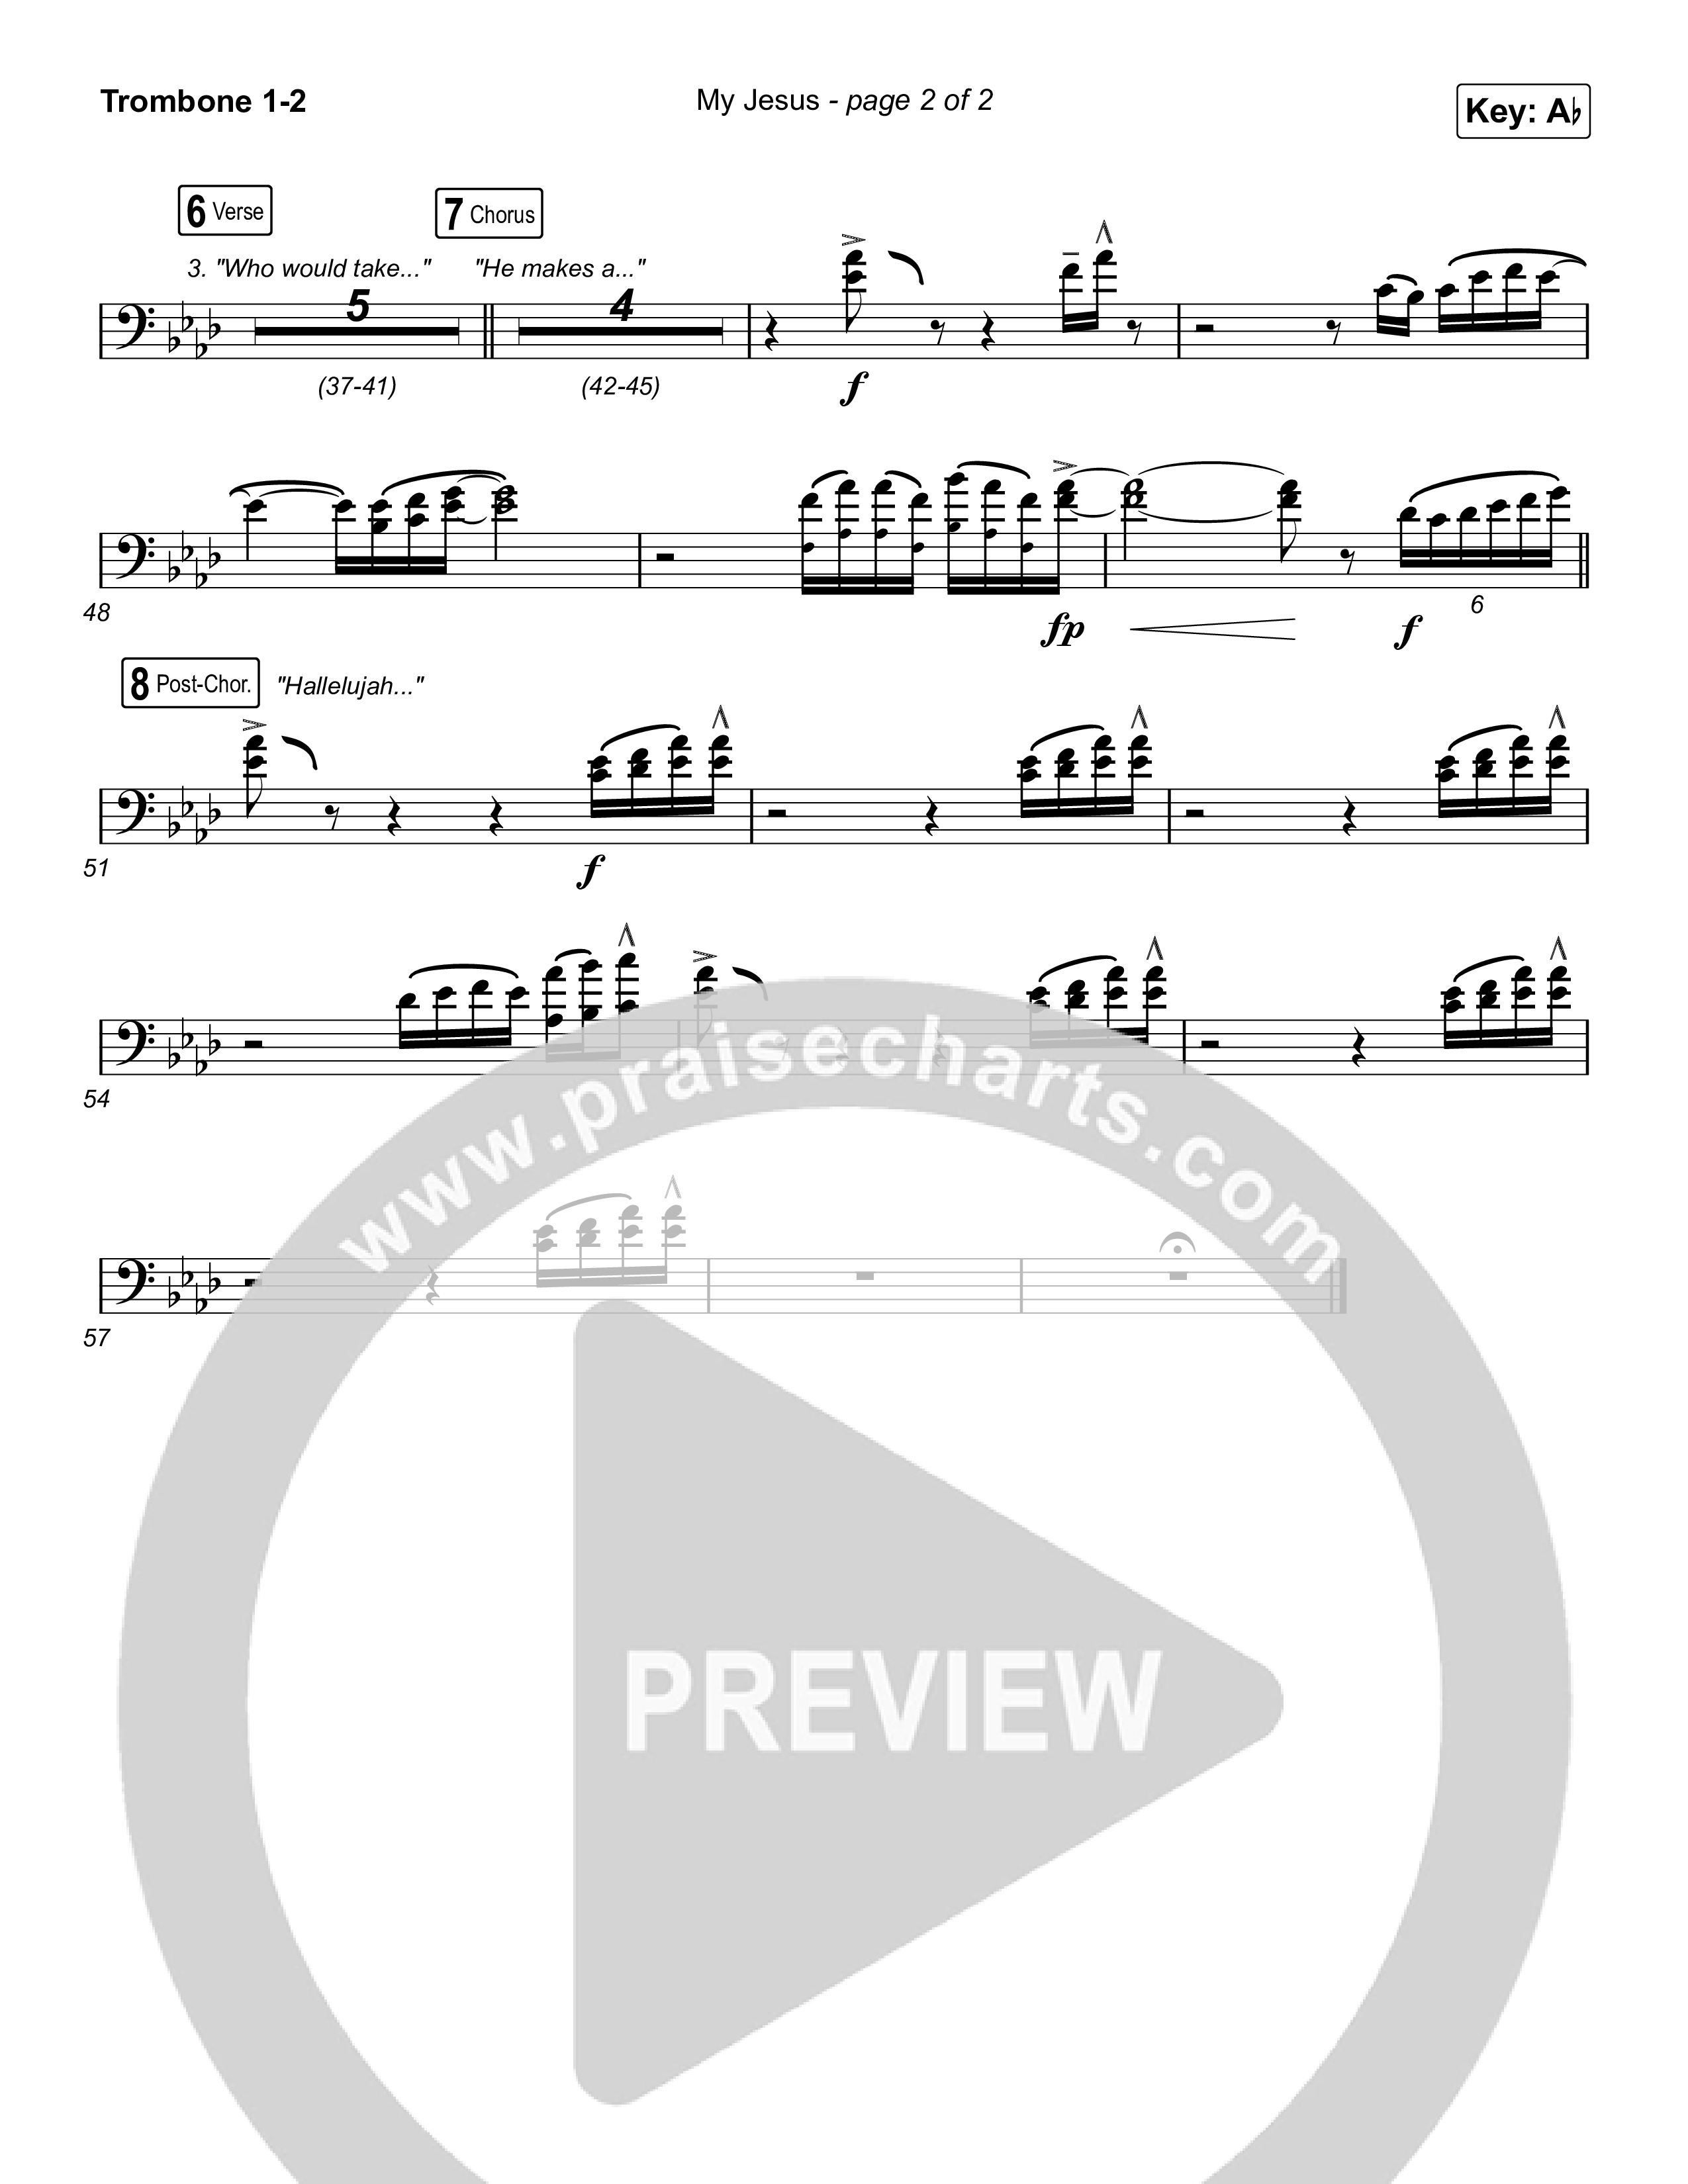 My Jesus (Sing It Now SATB) Trombone 1/2 (Anne Wilson / Arr. Luke Gambill)